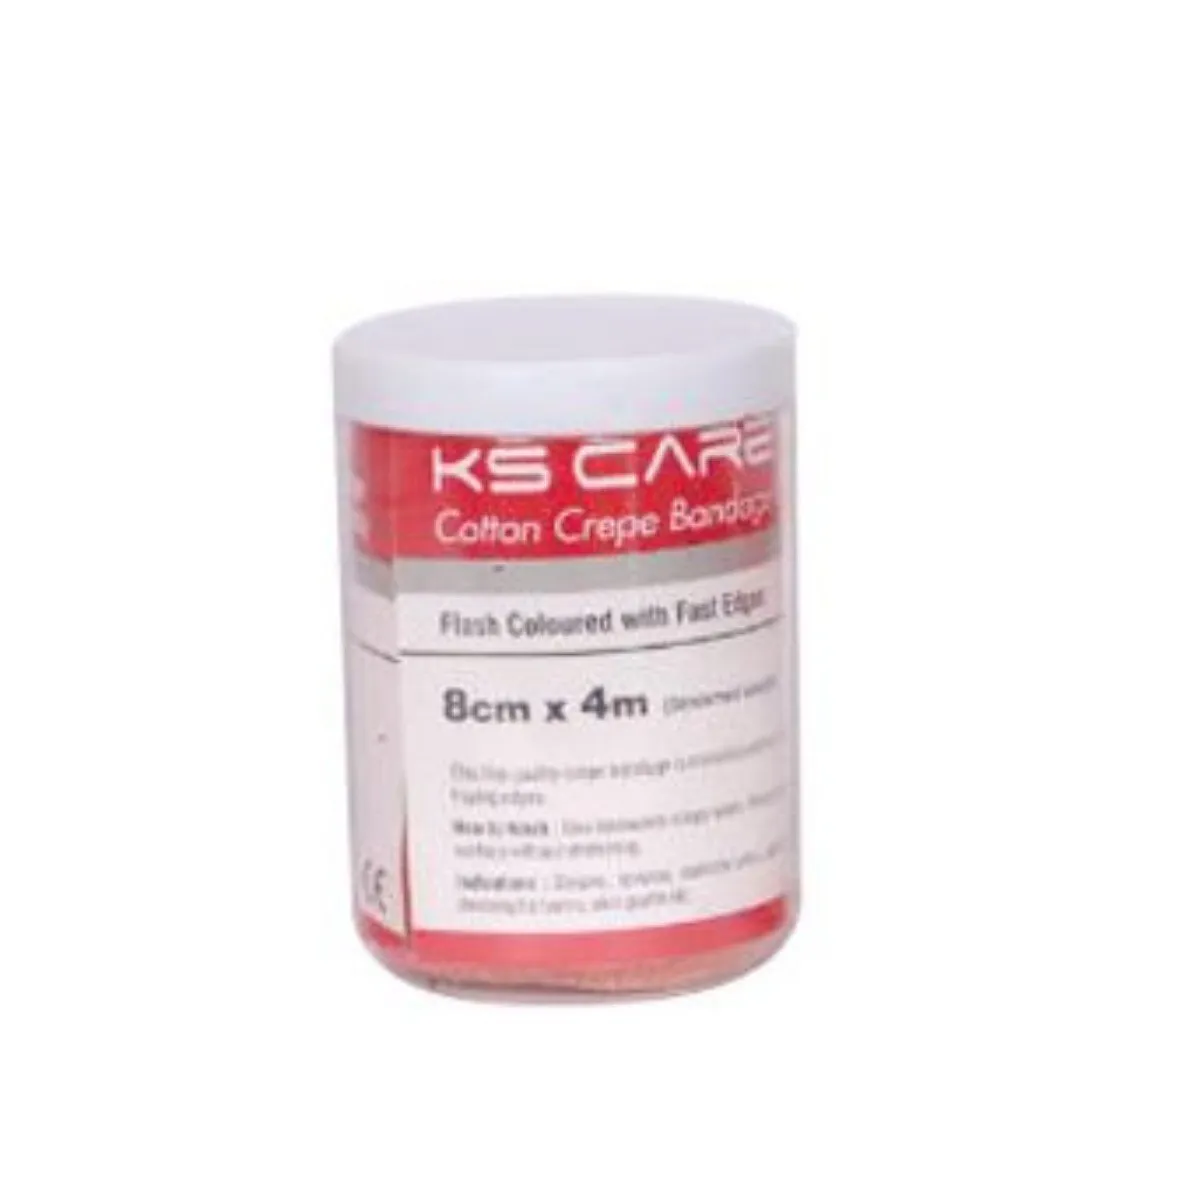 K. S. Care Cotton Crepe Bandage 8 cm x 4 mtr